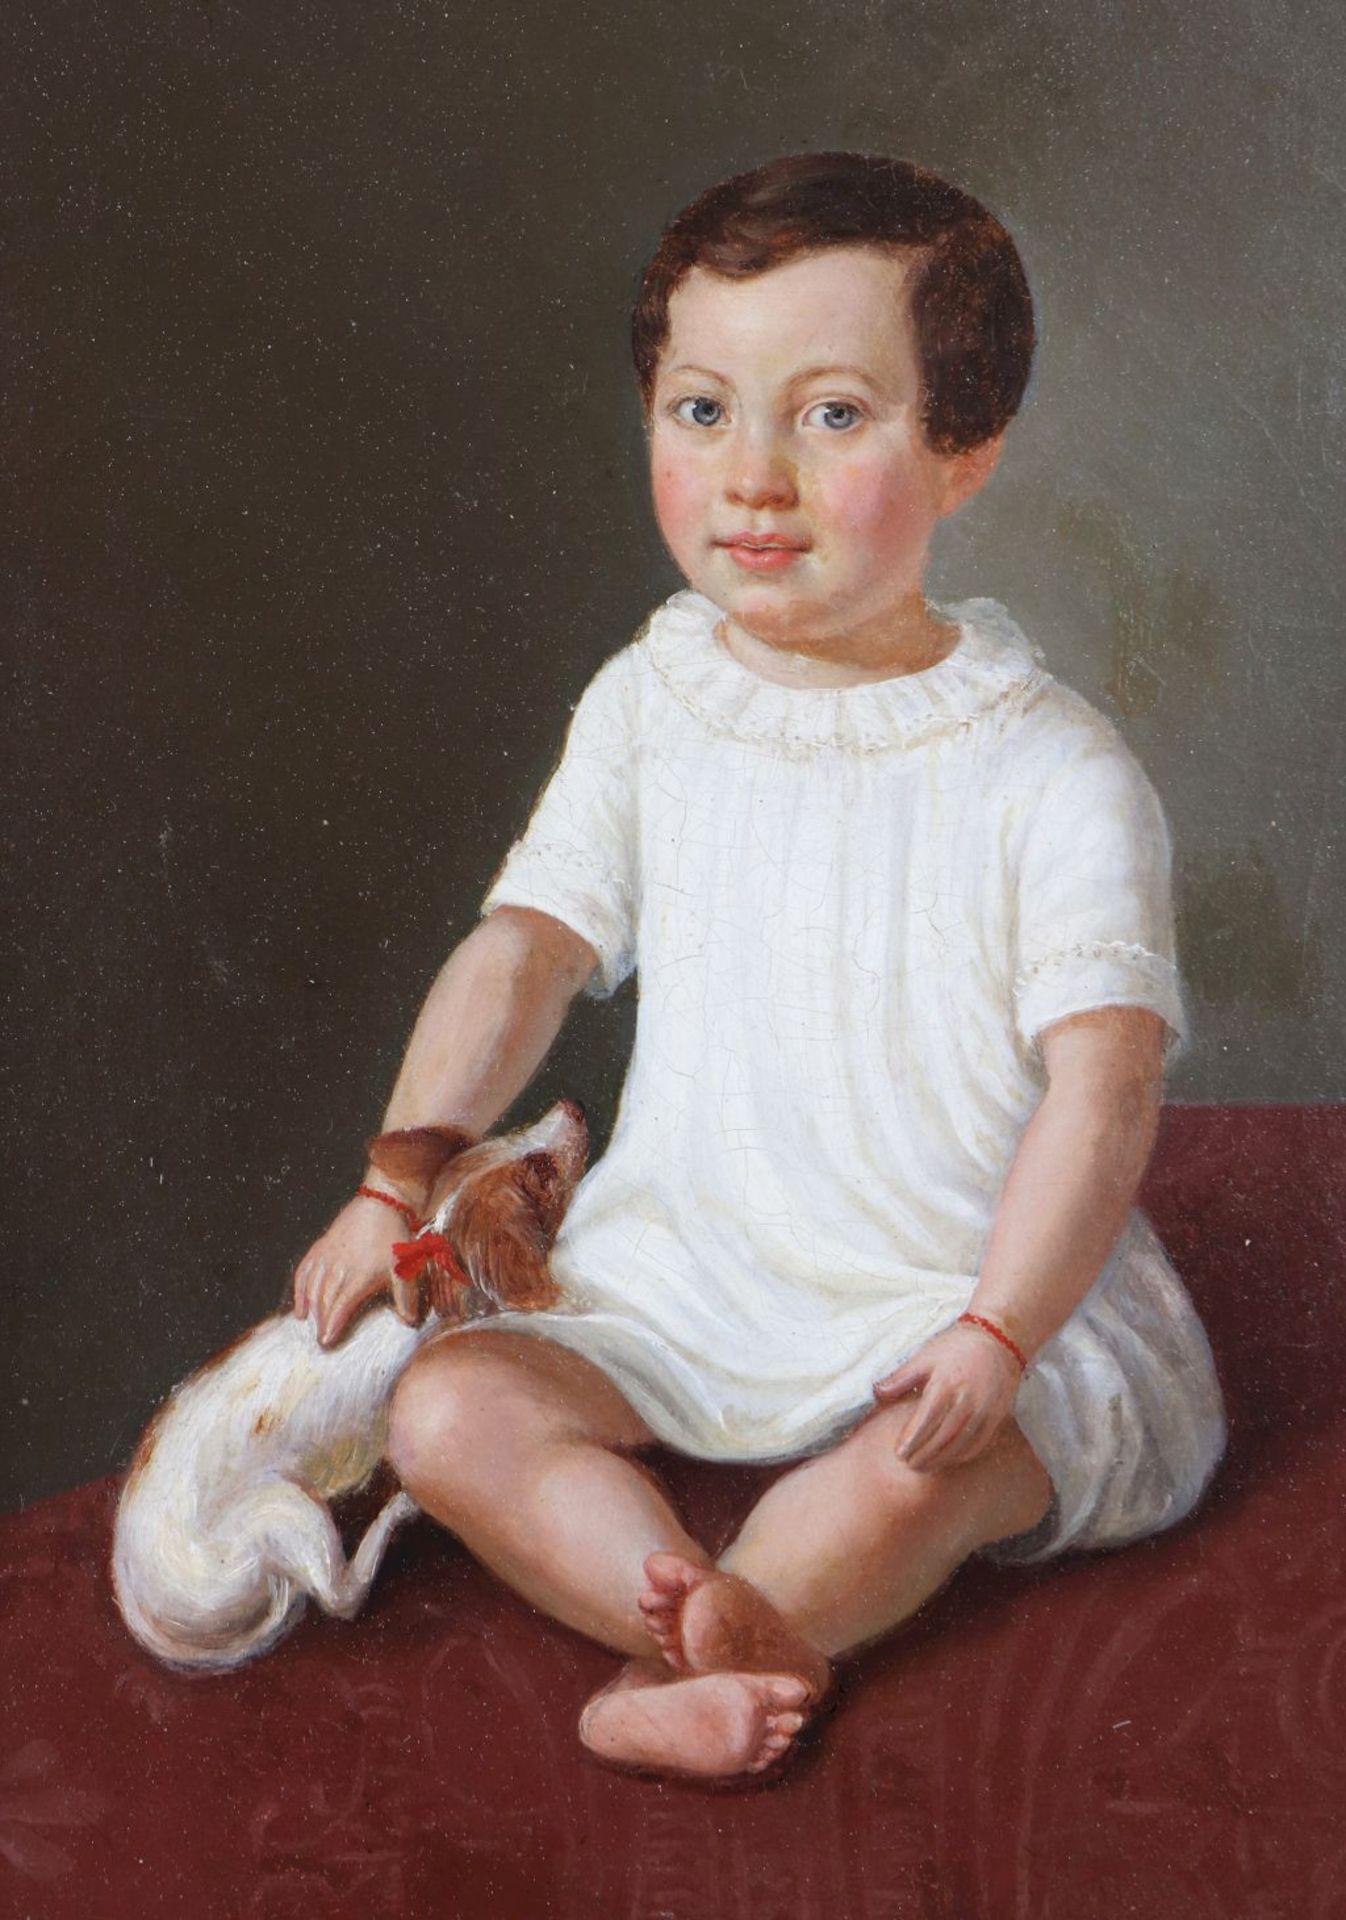 ANONYMER KÜNSTLER des 19. Jahrhunderts Öl auf Leinwand, ¨Biedermeier Porträt eines jungen Mädc - Image 2 of 3